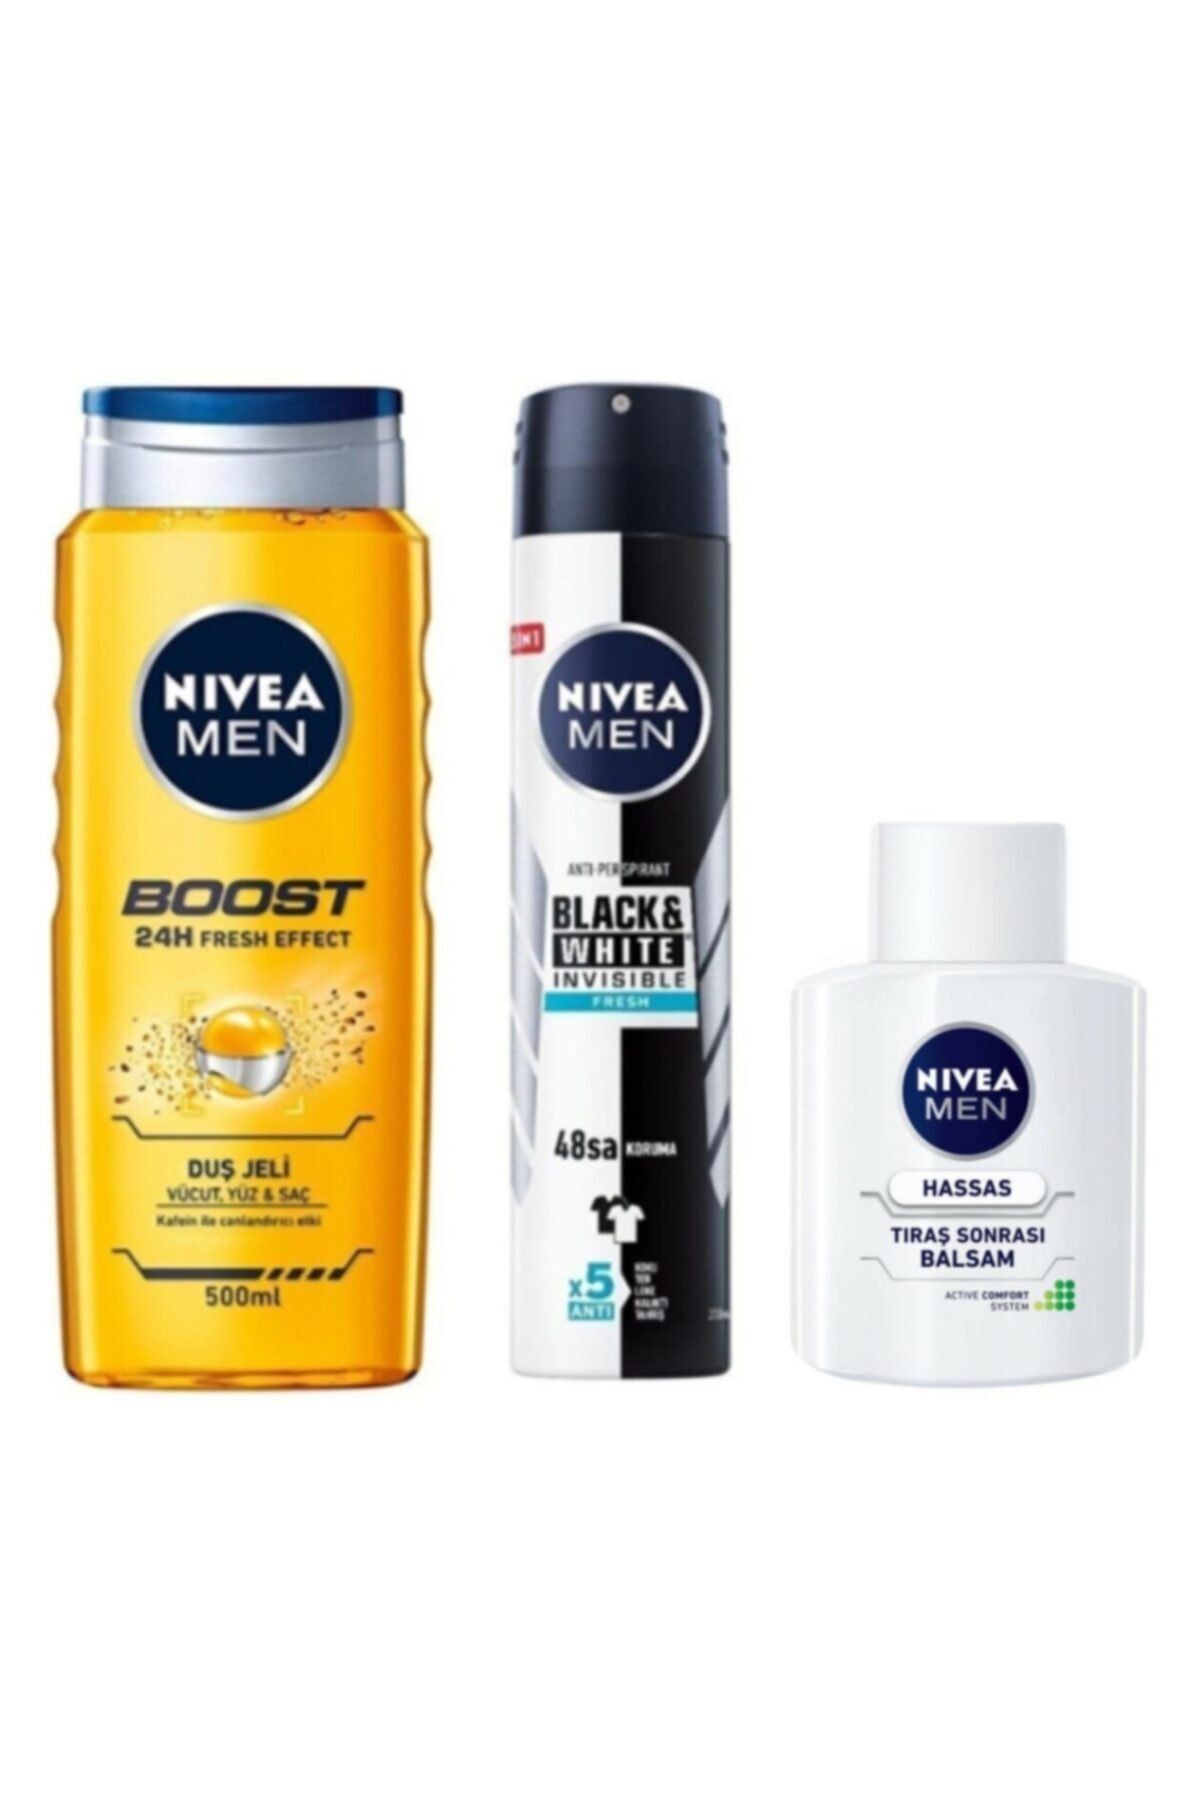 NIVEA Men Boost Erkek Duş Jeli 500 Ml + Deodorant 200 Ml + Tıraş Balsam 100 Ml Koçakozmetik.